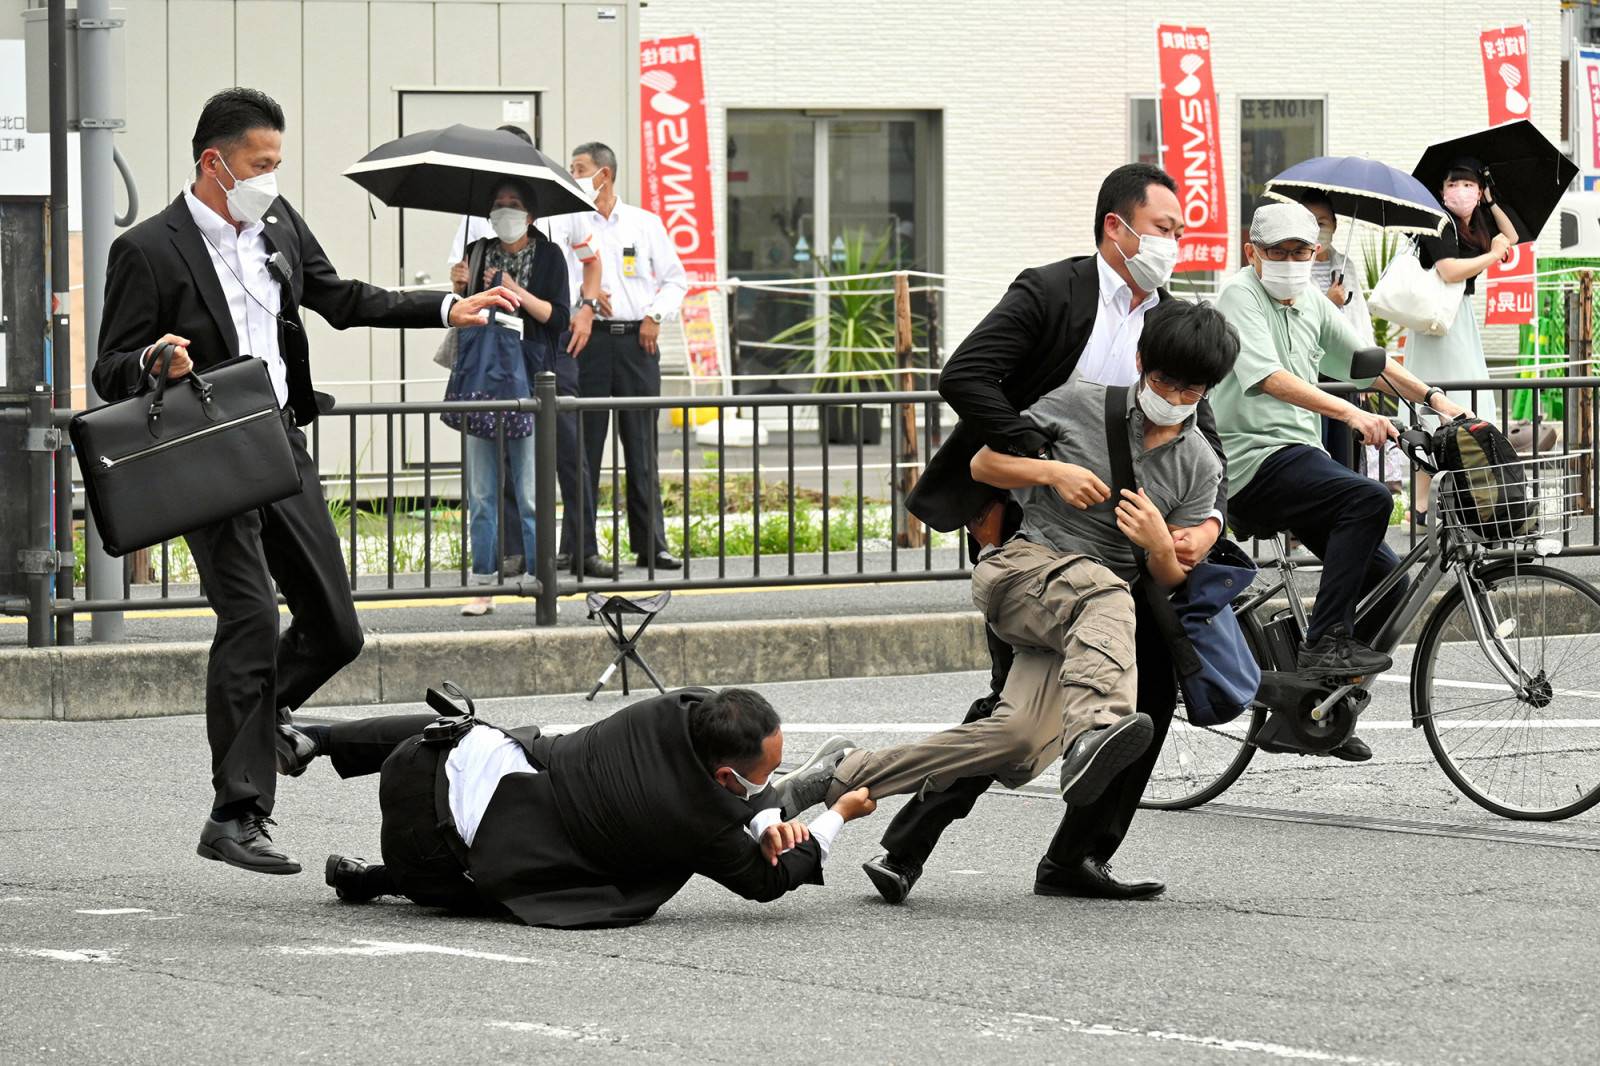 Rùng rợn lời khai quá trình tự chế súng của kẻ ám sát thủ tướng Shinzo Abe